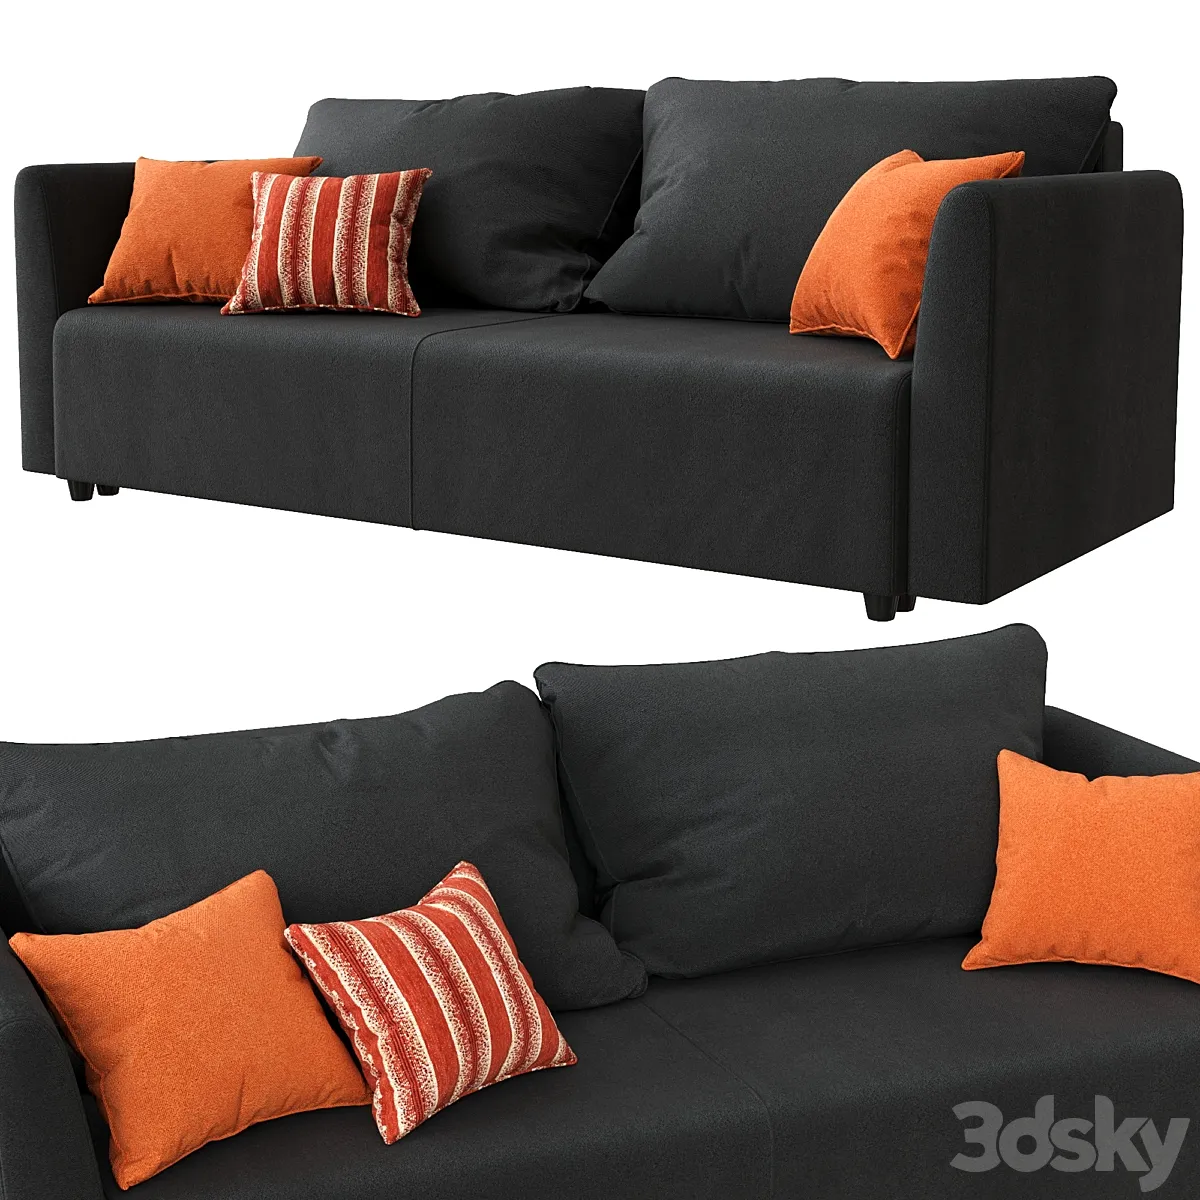 دانلود 3dsky - Brissund sofa Ikea